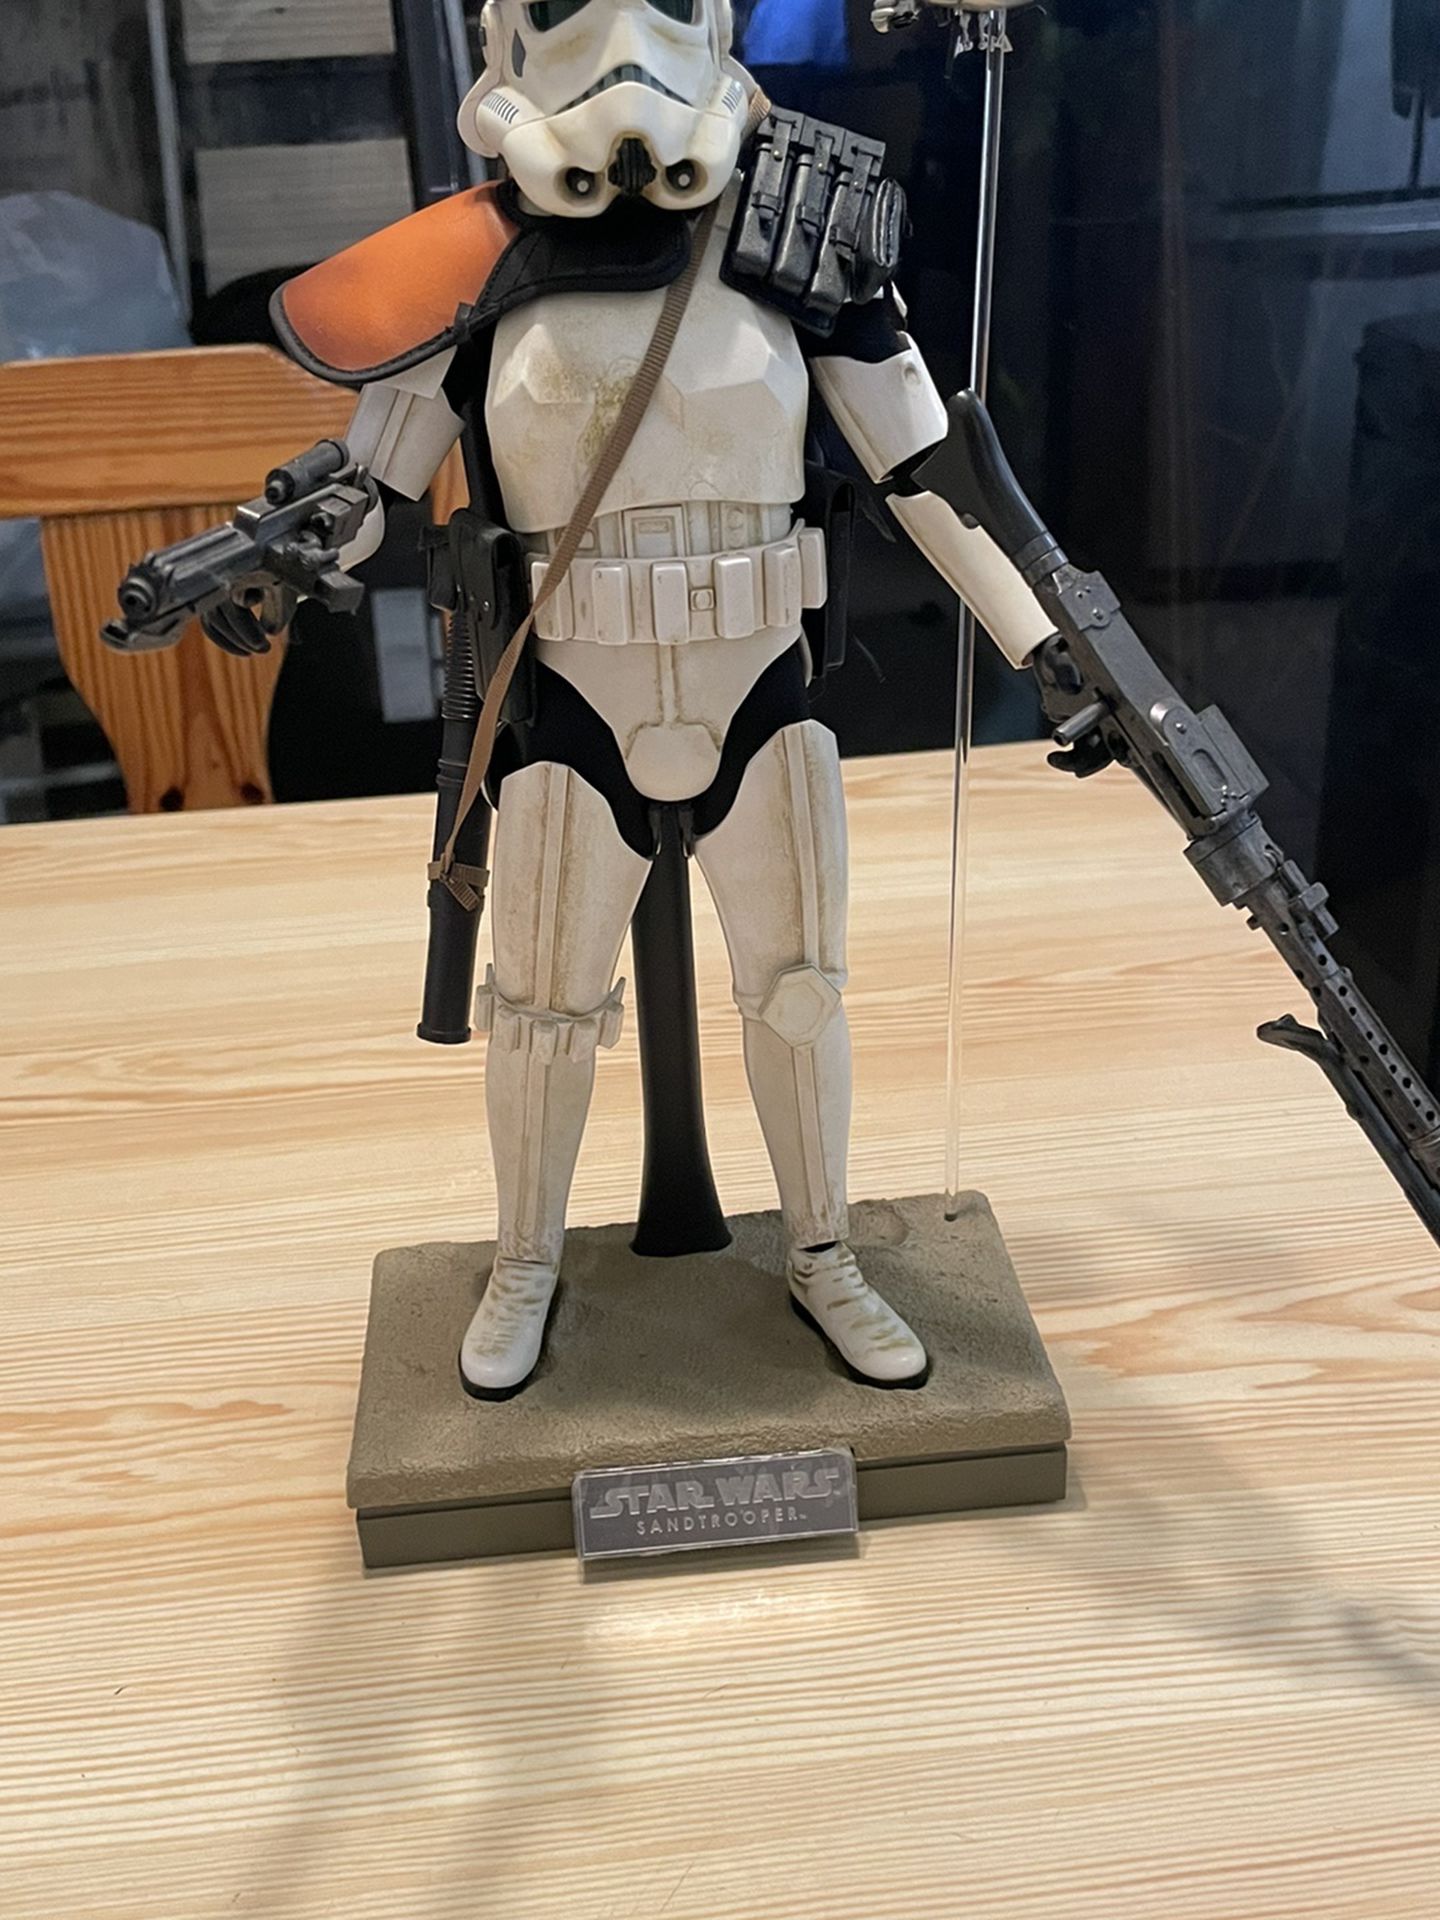 Hot Toys Star Wars Sandtrooper 1/6 Scale